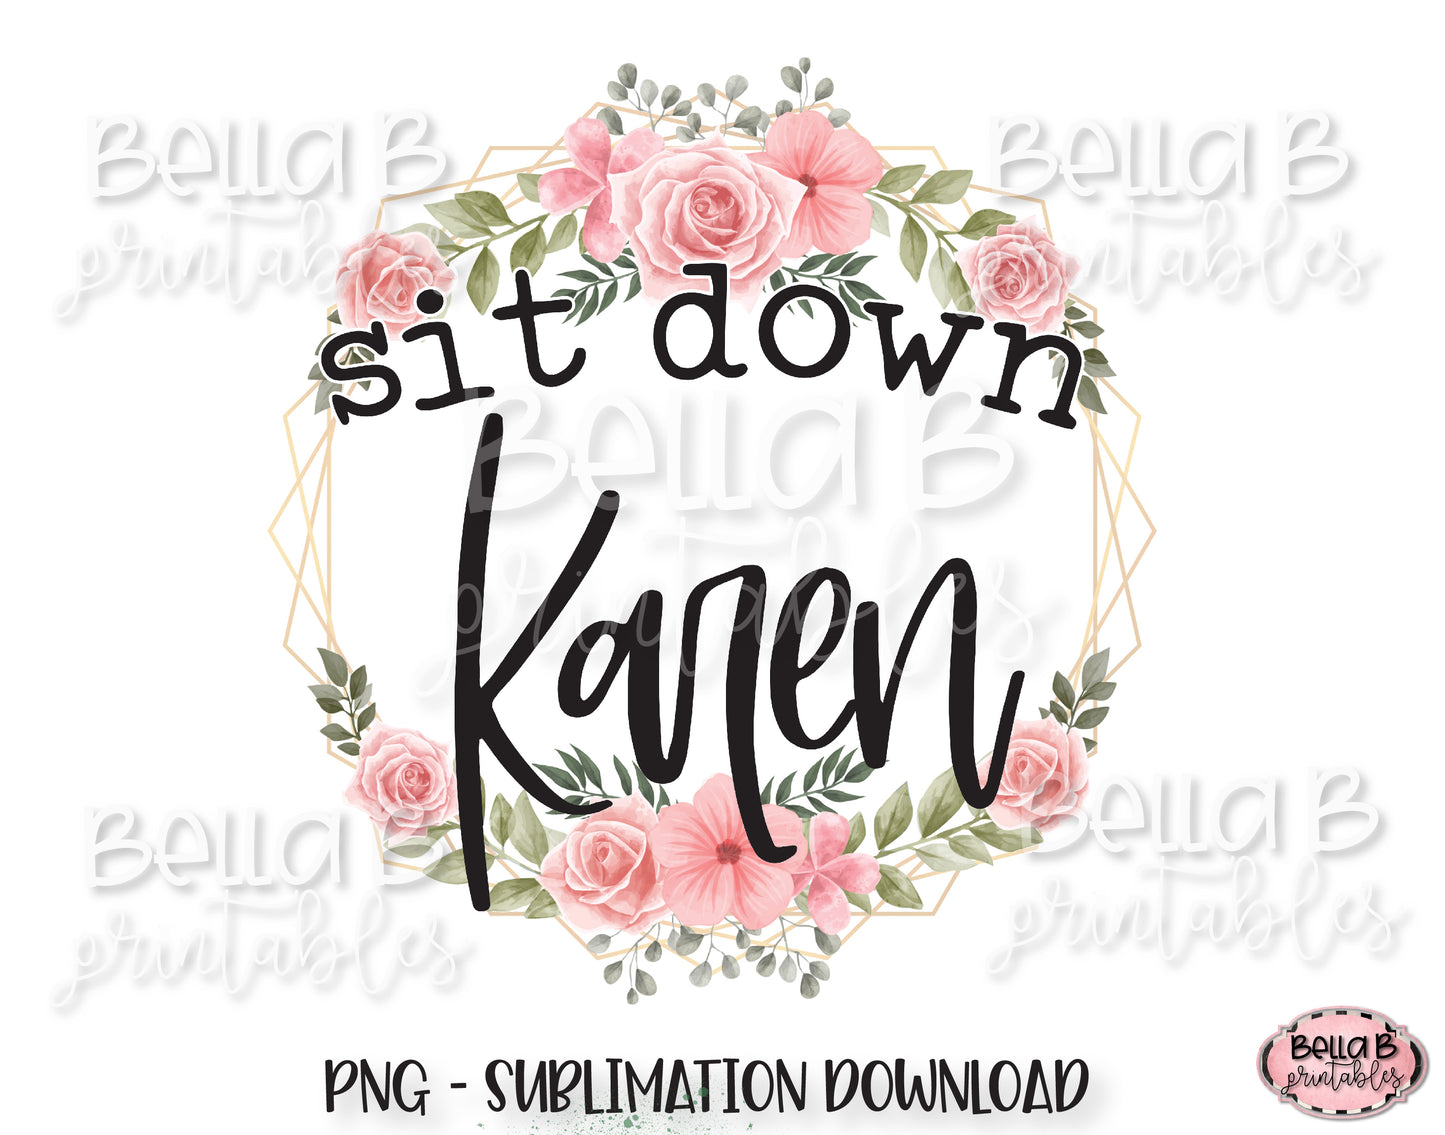 Sit Down Karen Sublimation Design, Funny Karen Design